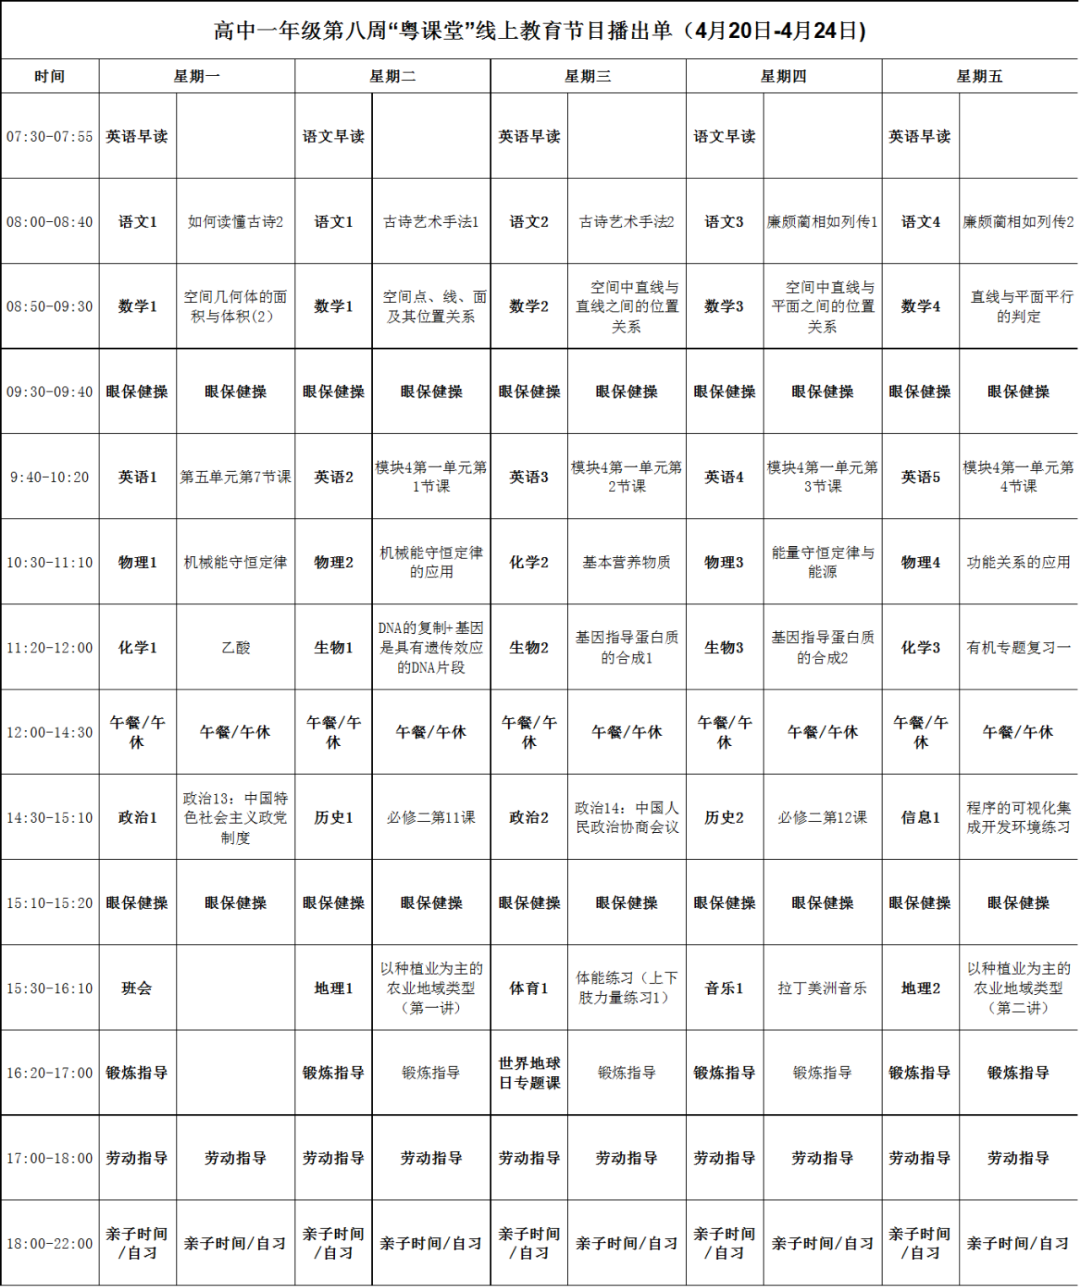 广东中小学“粤课堂”课程表完整版公布（4月20日4